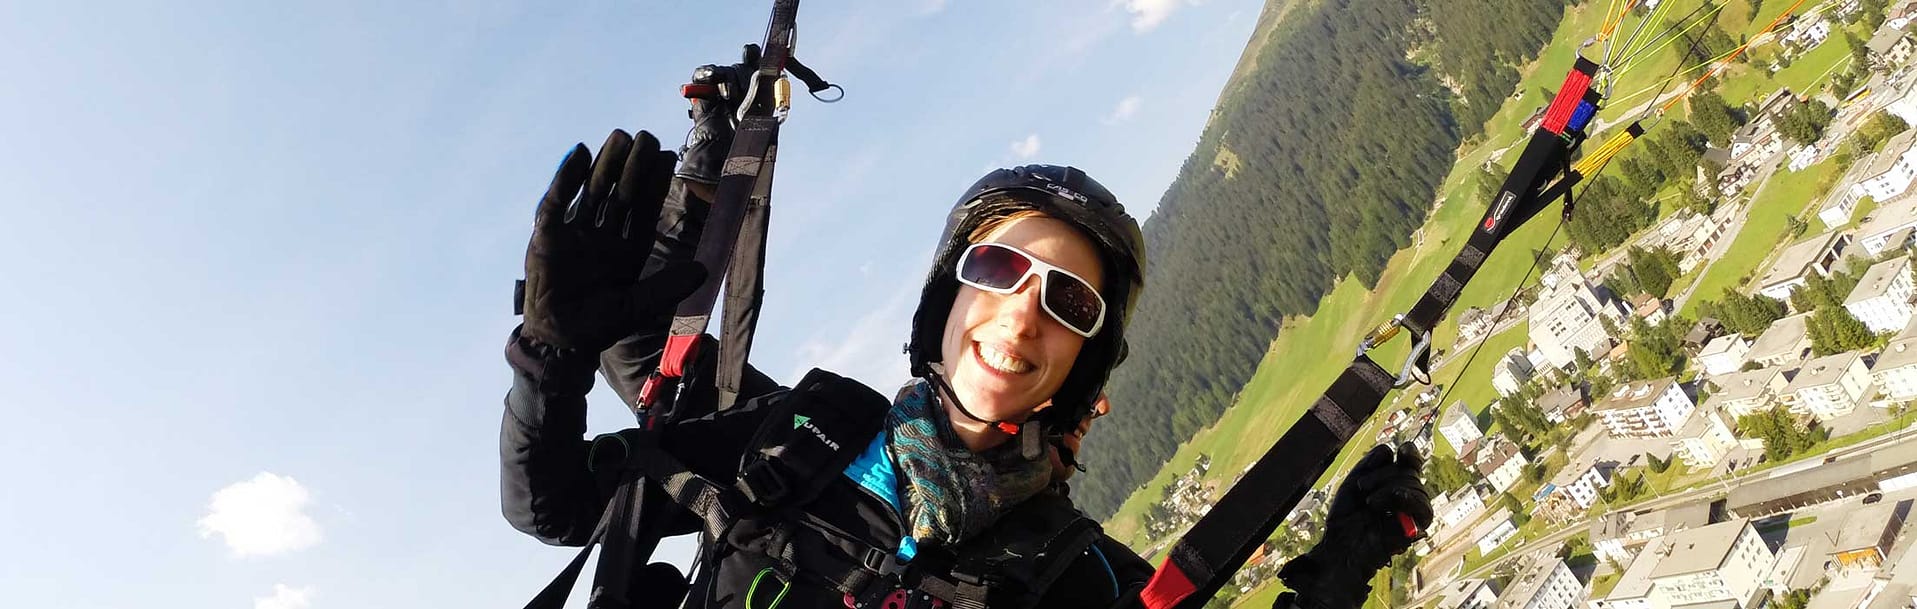 Kontakt Joyride Paragliding Davos